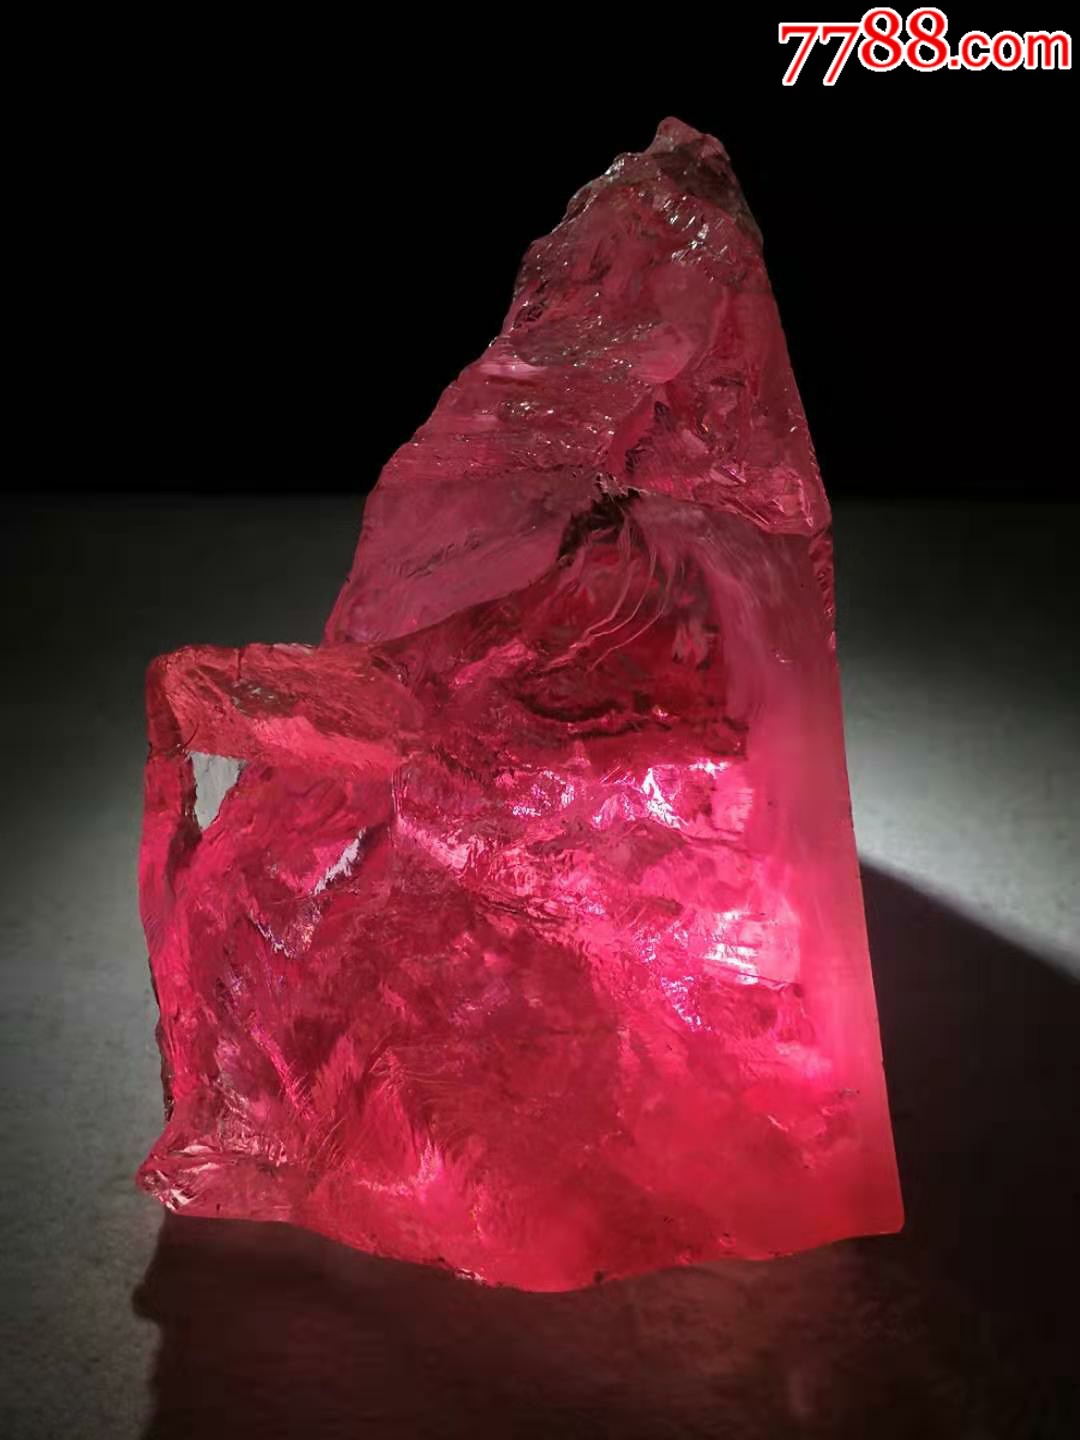 天然红宝石原石石质细腻通透,色彩艳丽,包浆浓厚,保存完好